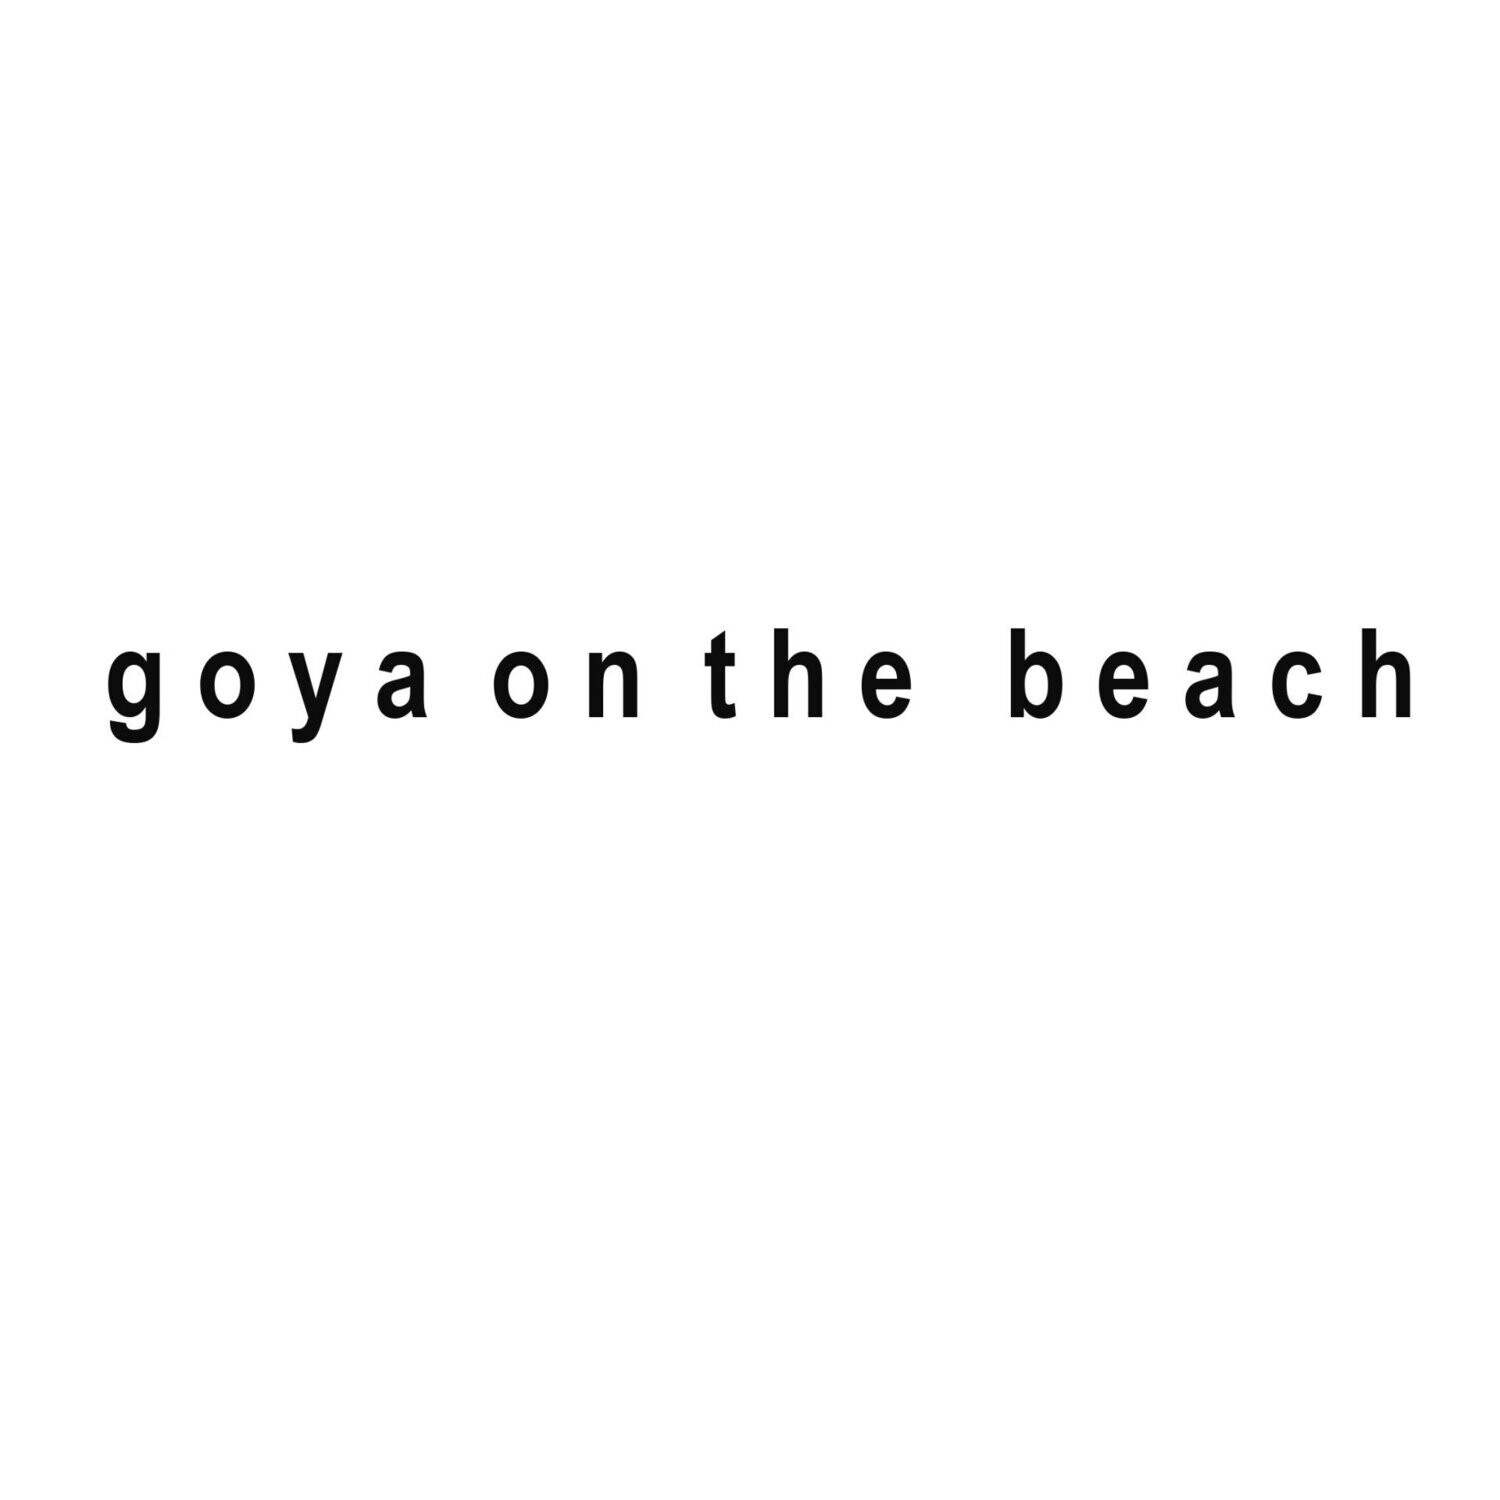 Goya on the beach